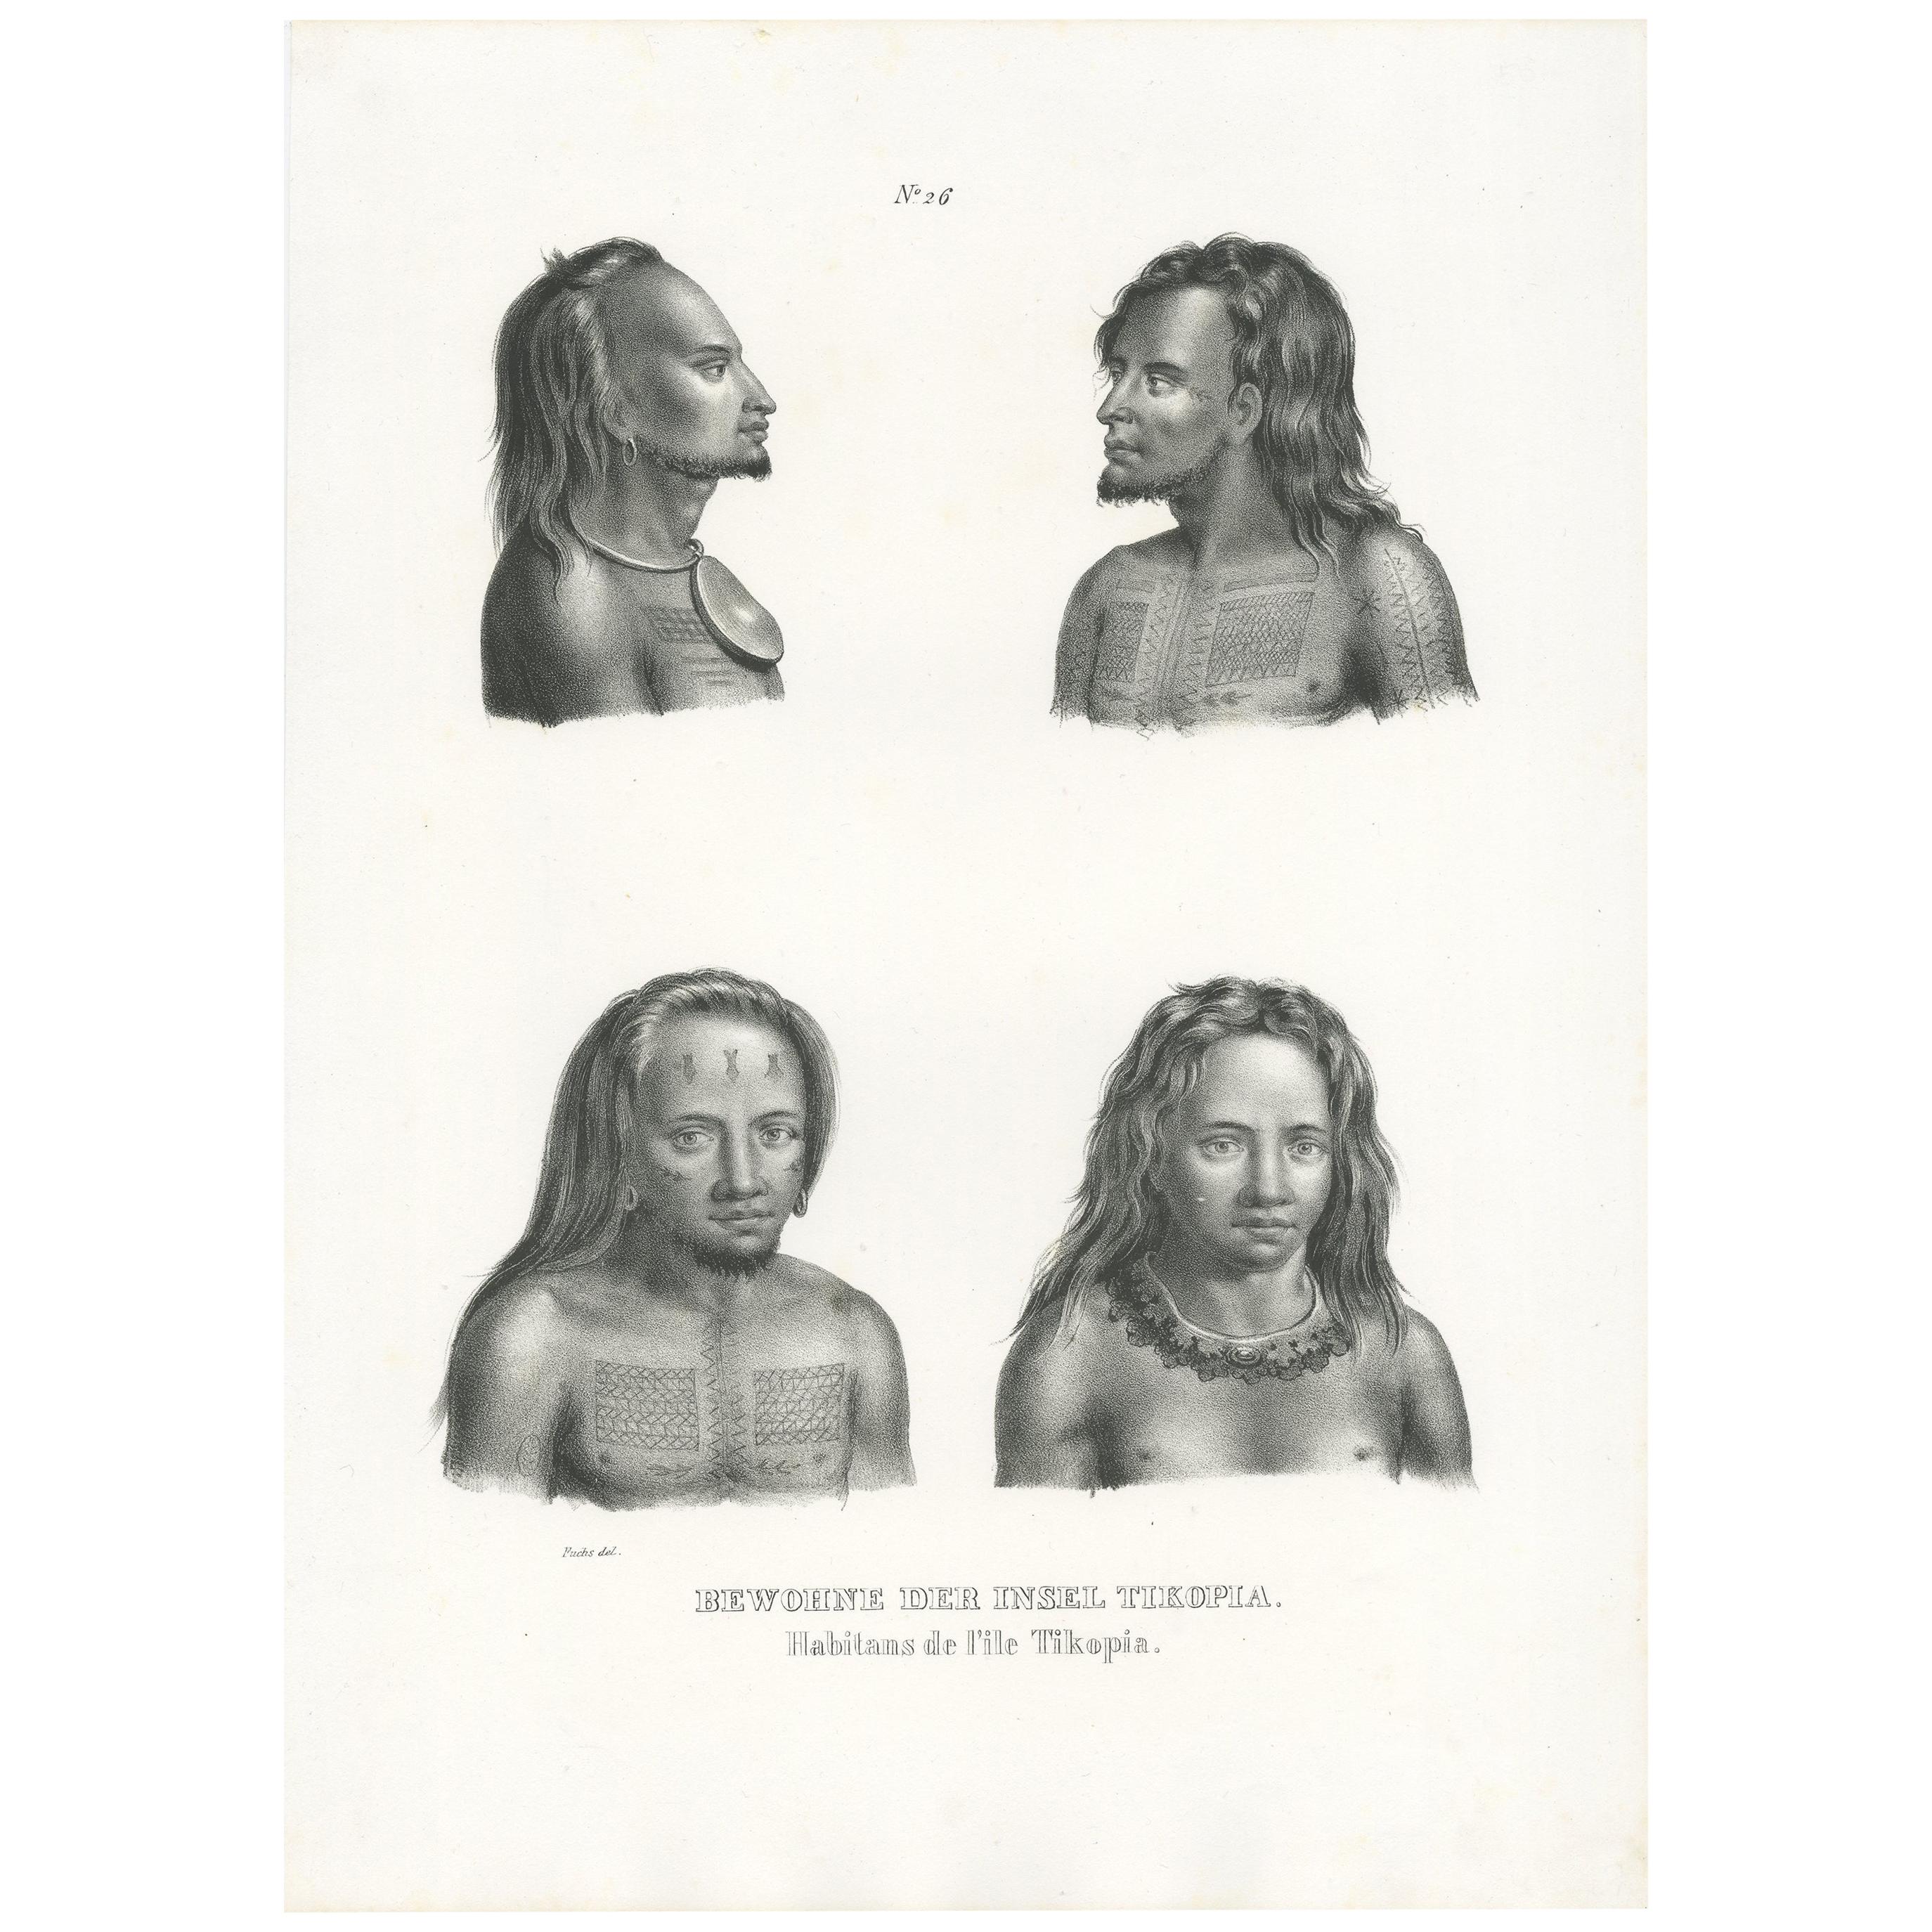 Antiker Druck der tibetischen Ureinwohner von Honegger, 1845